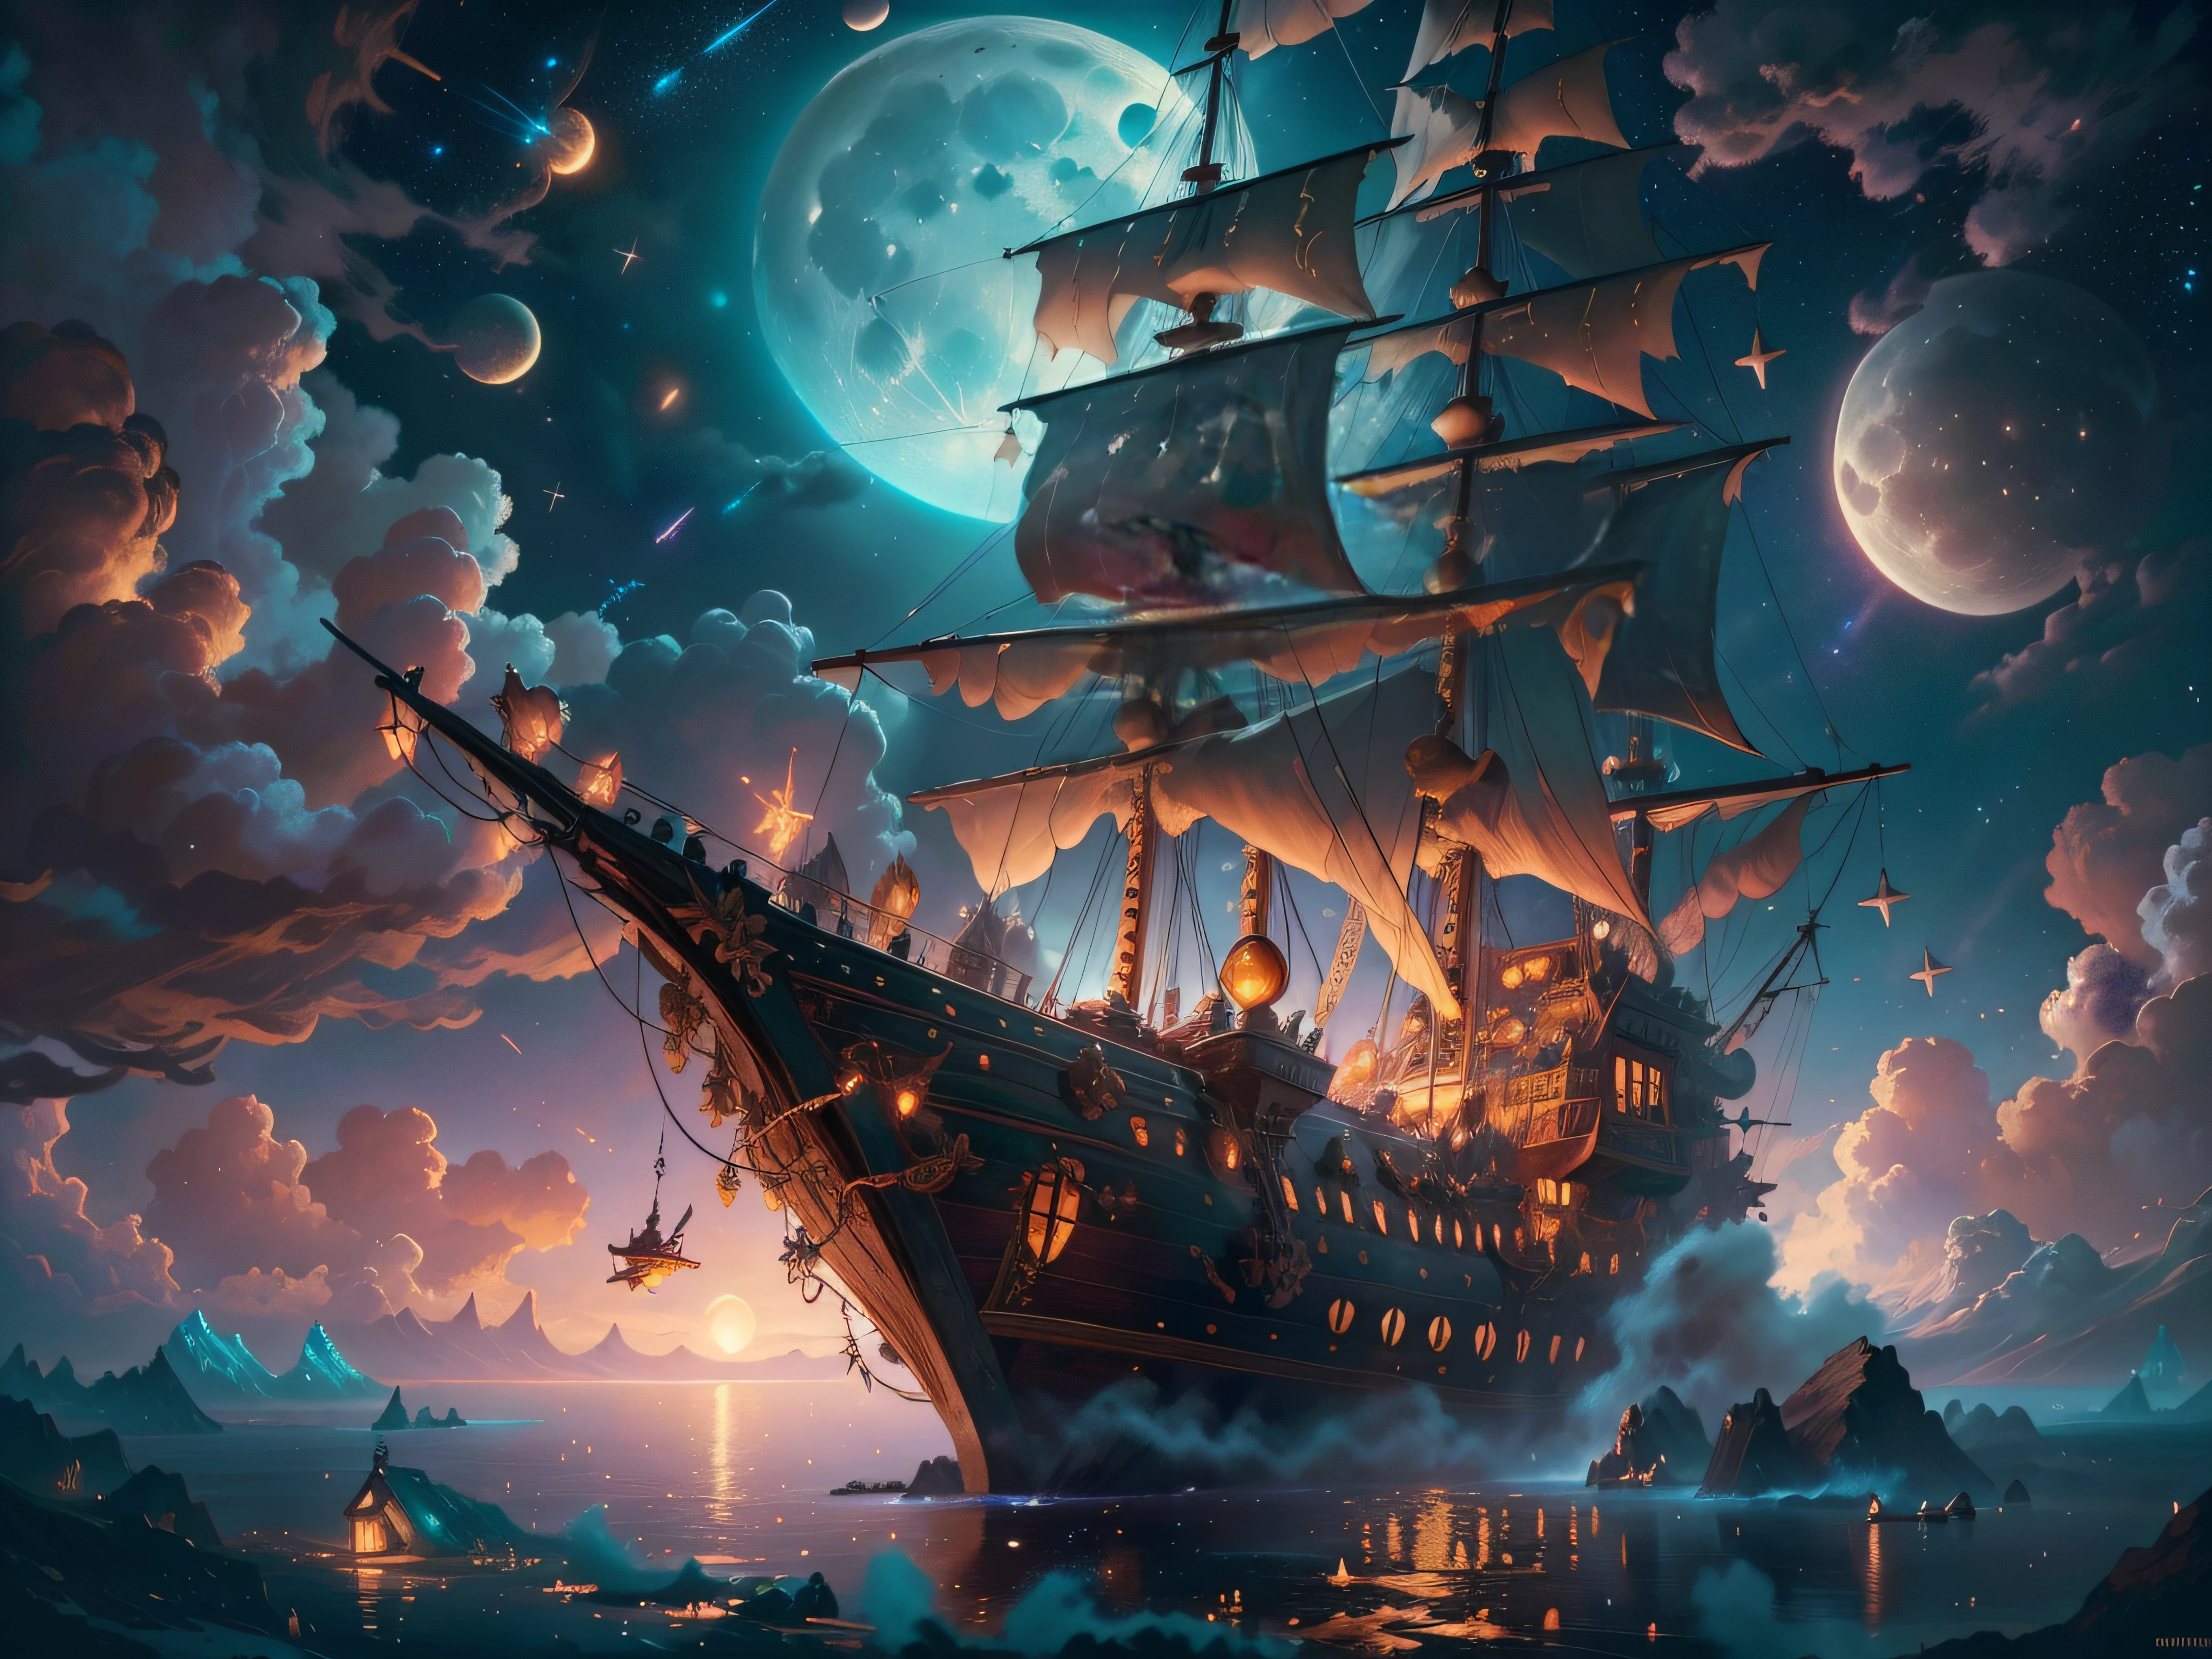 飞天海盗船被小仙女们包围的绘画作品, 流星雨, 云, 满月, 背景中的星星, 幻想, 4K 高清数字艺术, 8K 高品质细节艺术, 西里尔·罗兰风格, detailed 幻想 digital art, epic 幻想 science fiction illustration, 惊人的壁纸, 受到 Gaston Bussiere --auto --s2 的启发